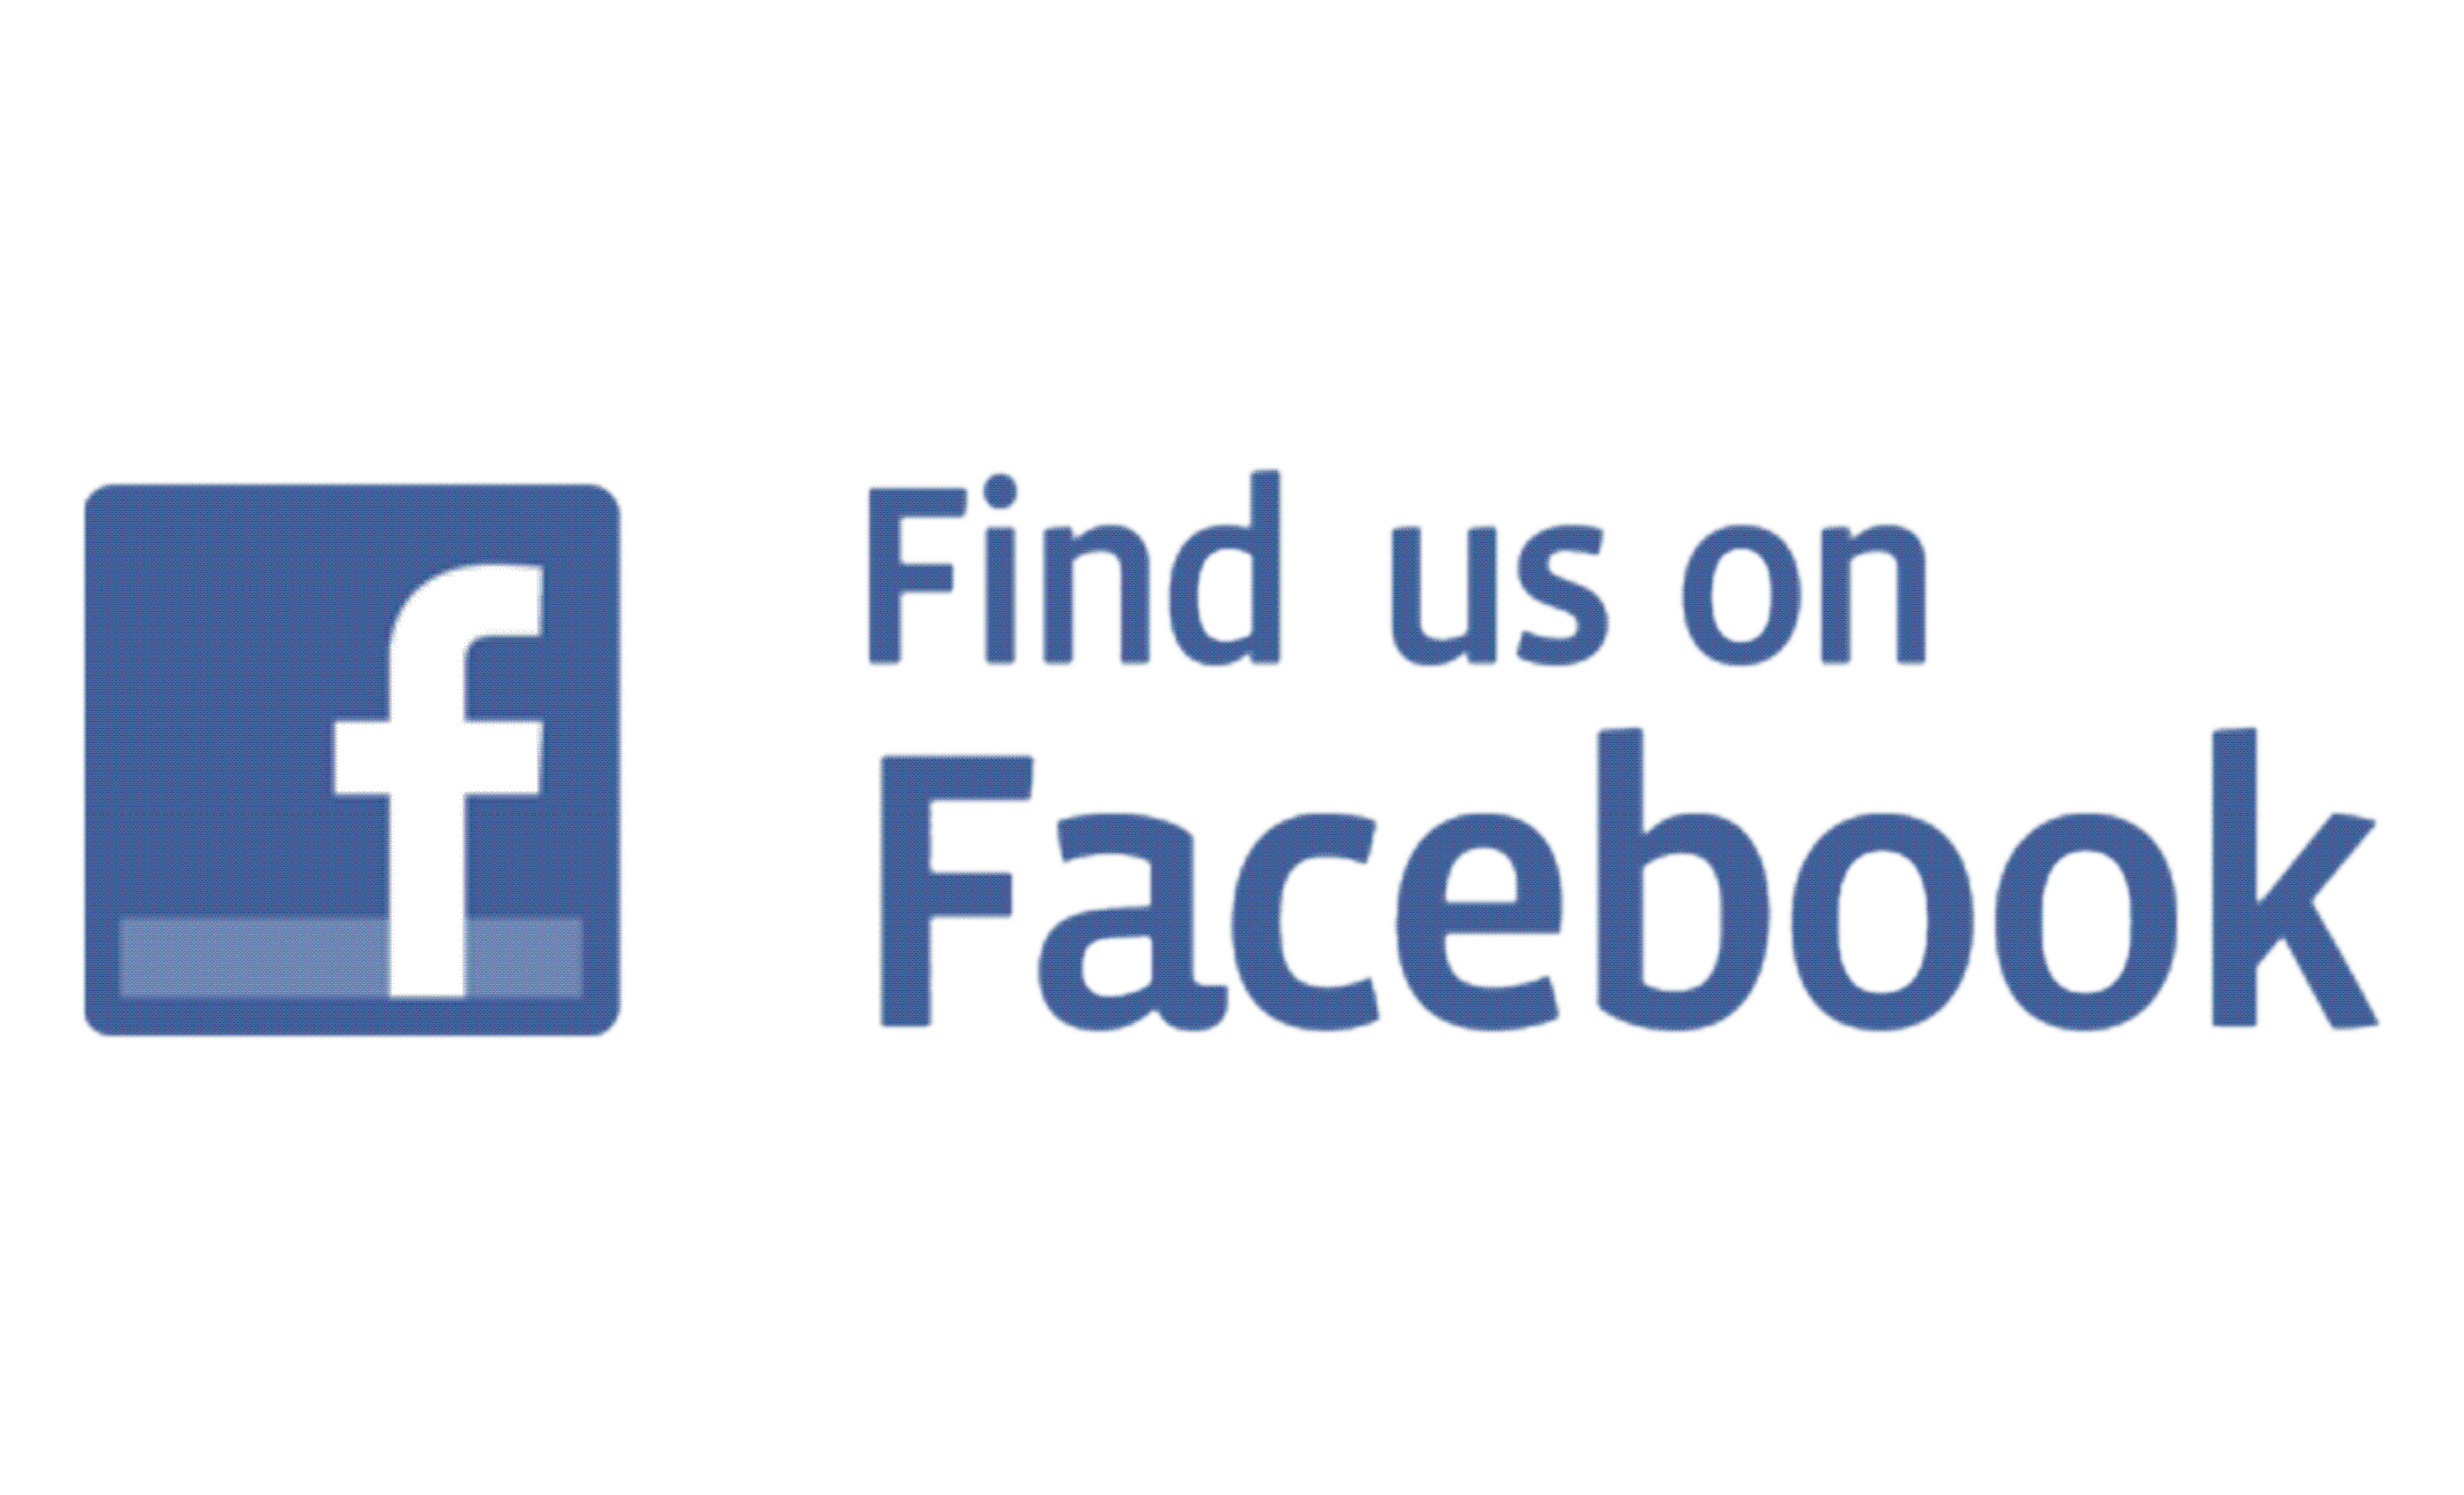 Follow Us On Facebook Logo - Follow Us on Facebook transparent PNG - StickPNG